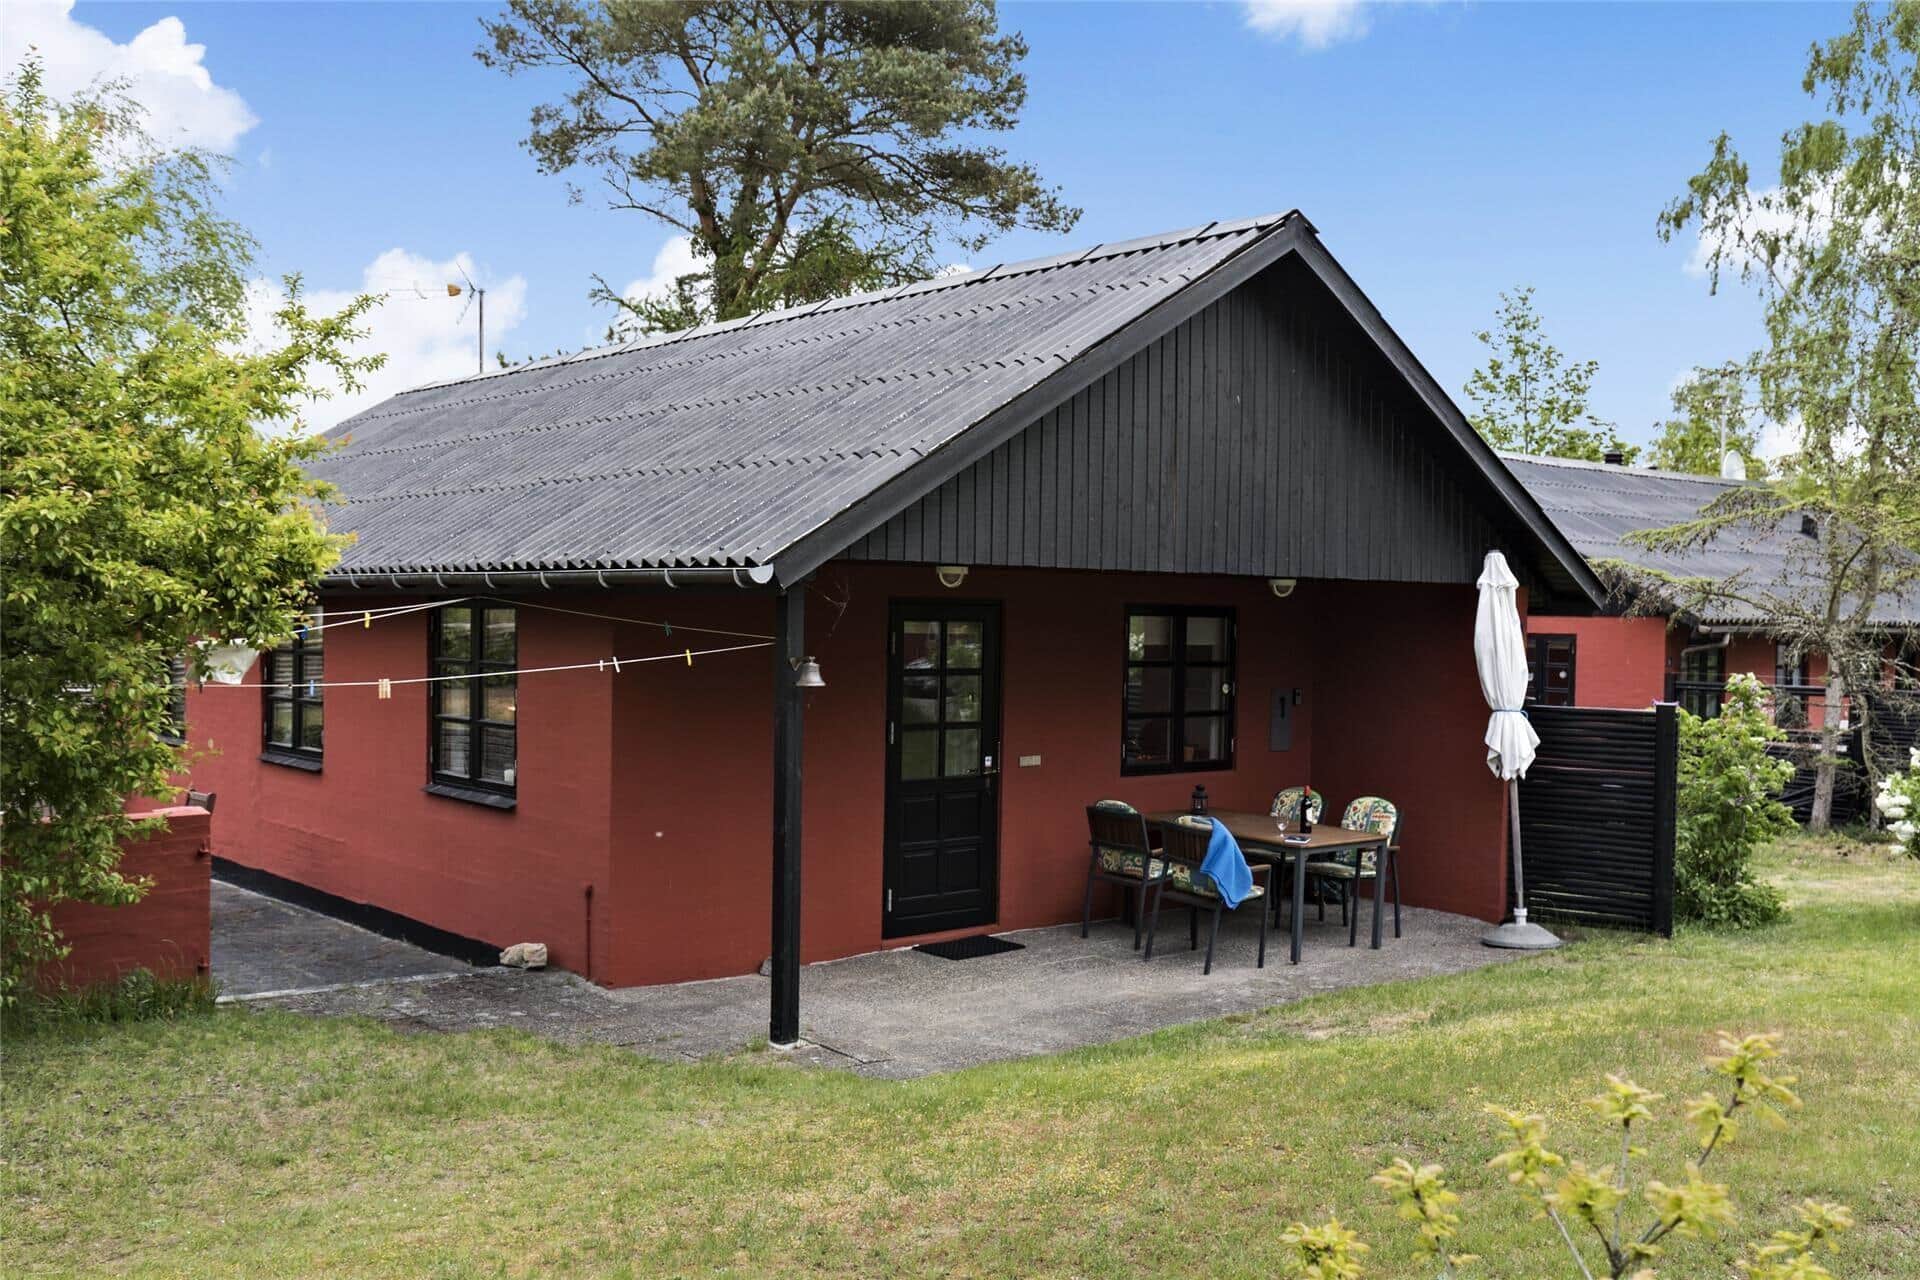 Bild 0-10 Ferienhaus 3617, Sandkrogen 8, DK - 3730 Nexø